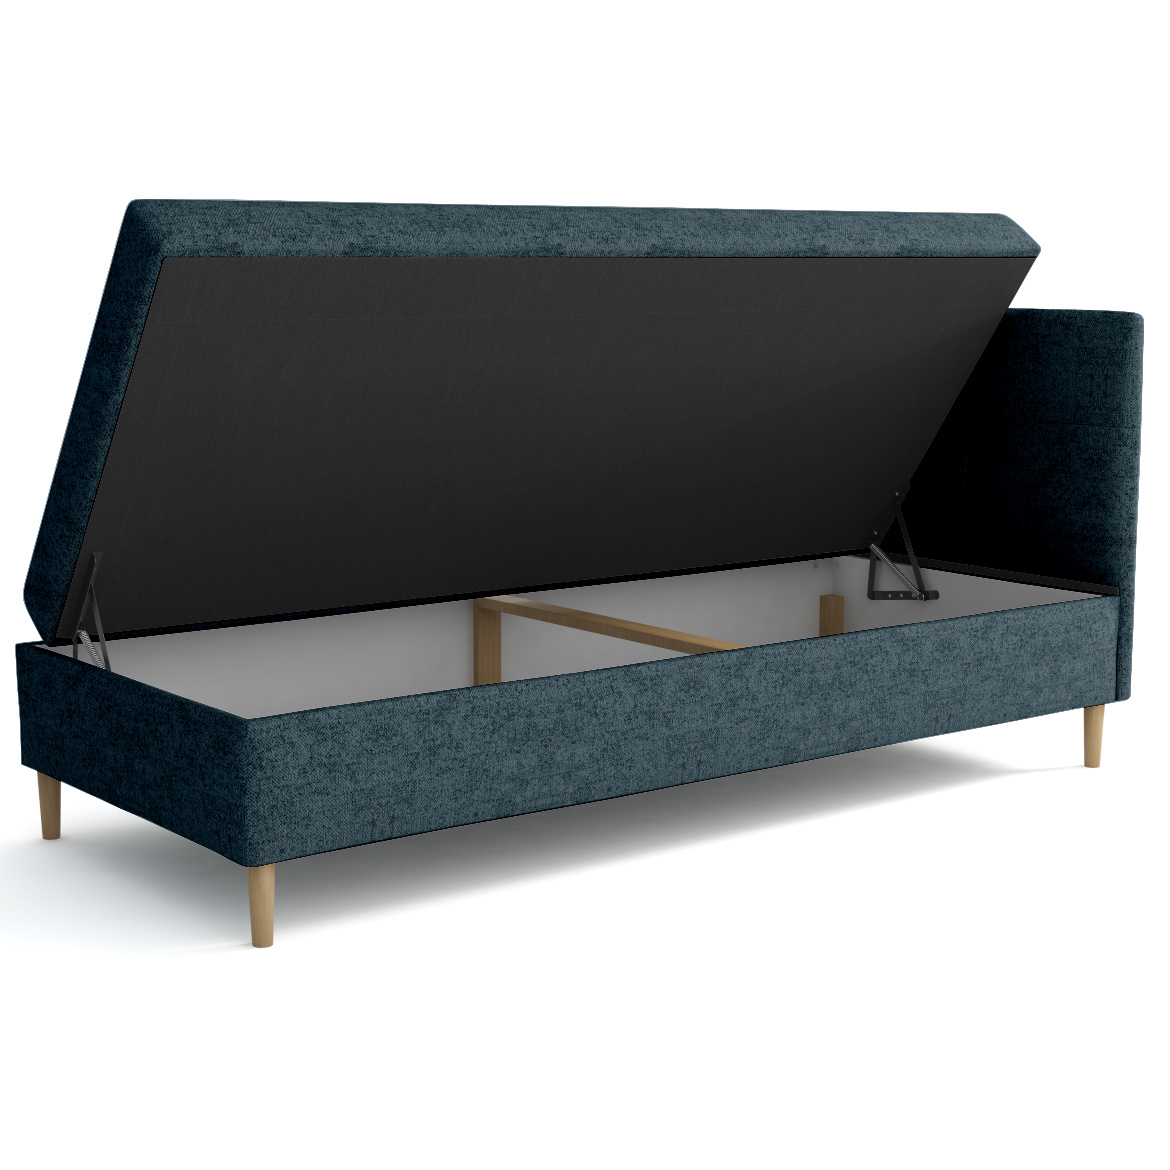 Krevet Enzo sa prostorom za odlaganje desni 82x204x112 cm zeleni